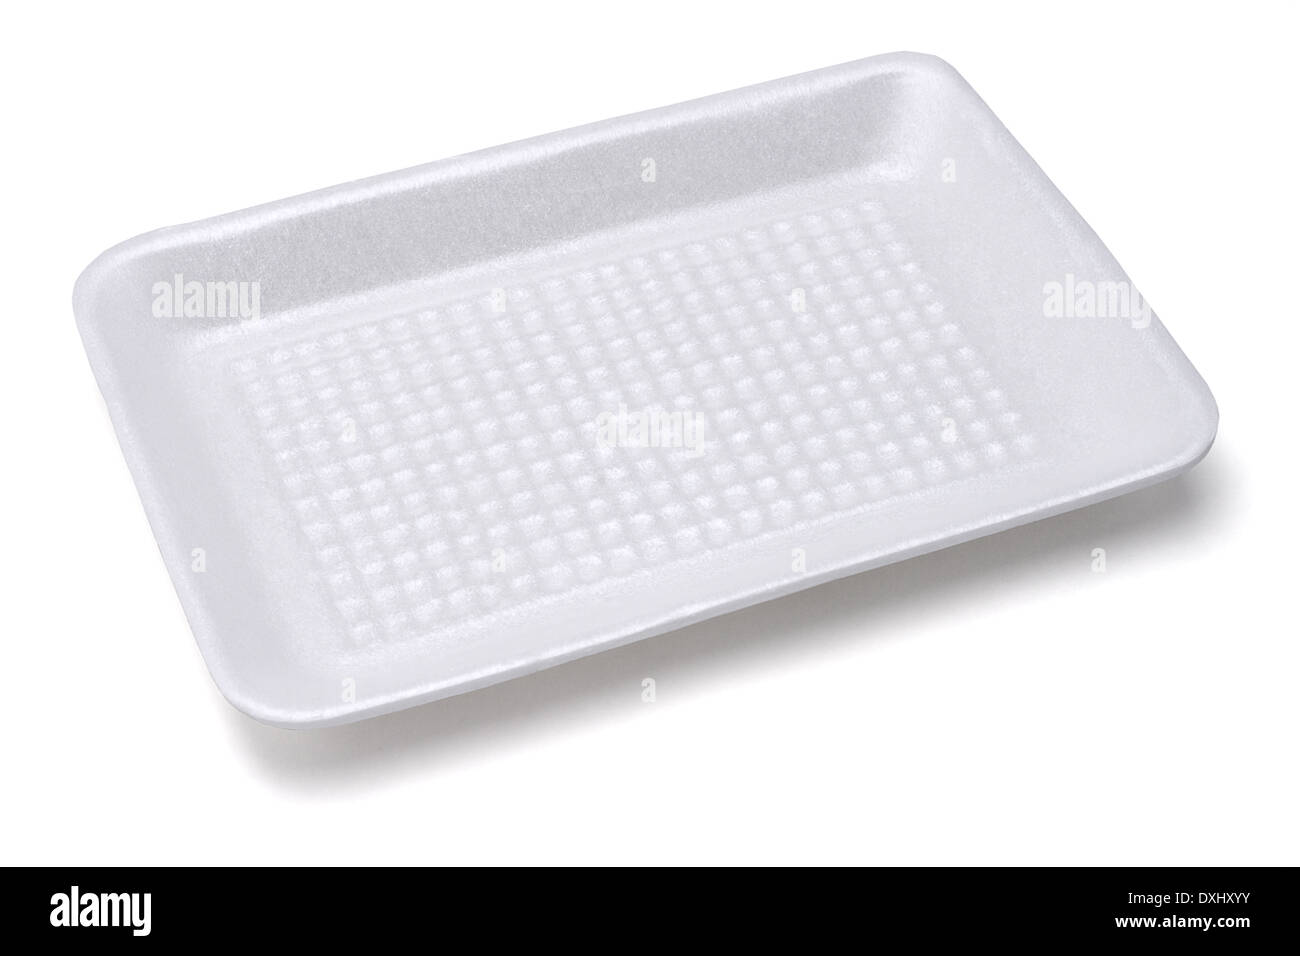 https://c8.alamy.com/comp/DXHXYY/empty-styrofoam-food-tray-on-white-background-DXHXYY.jpg